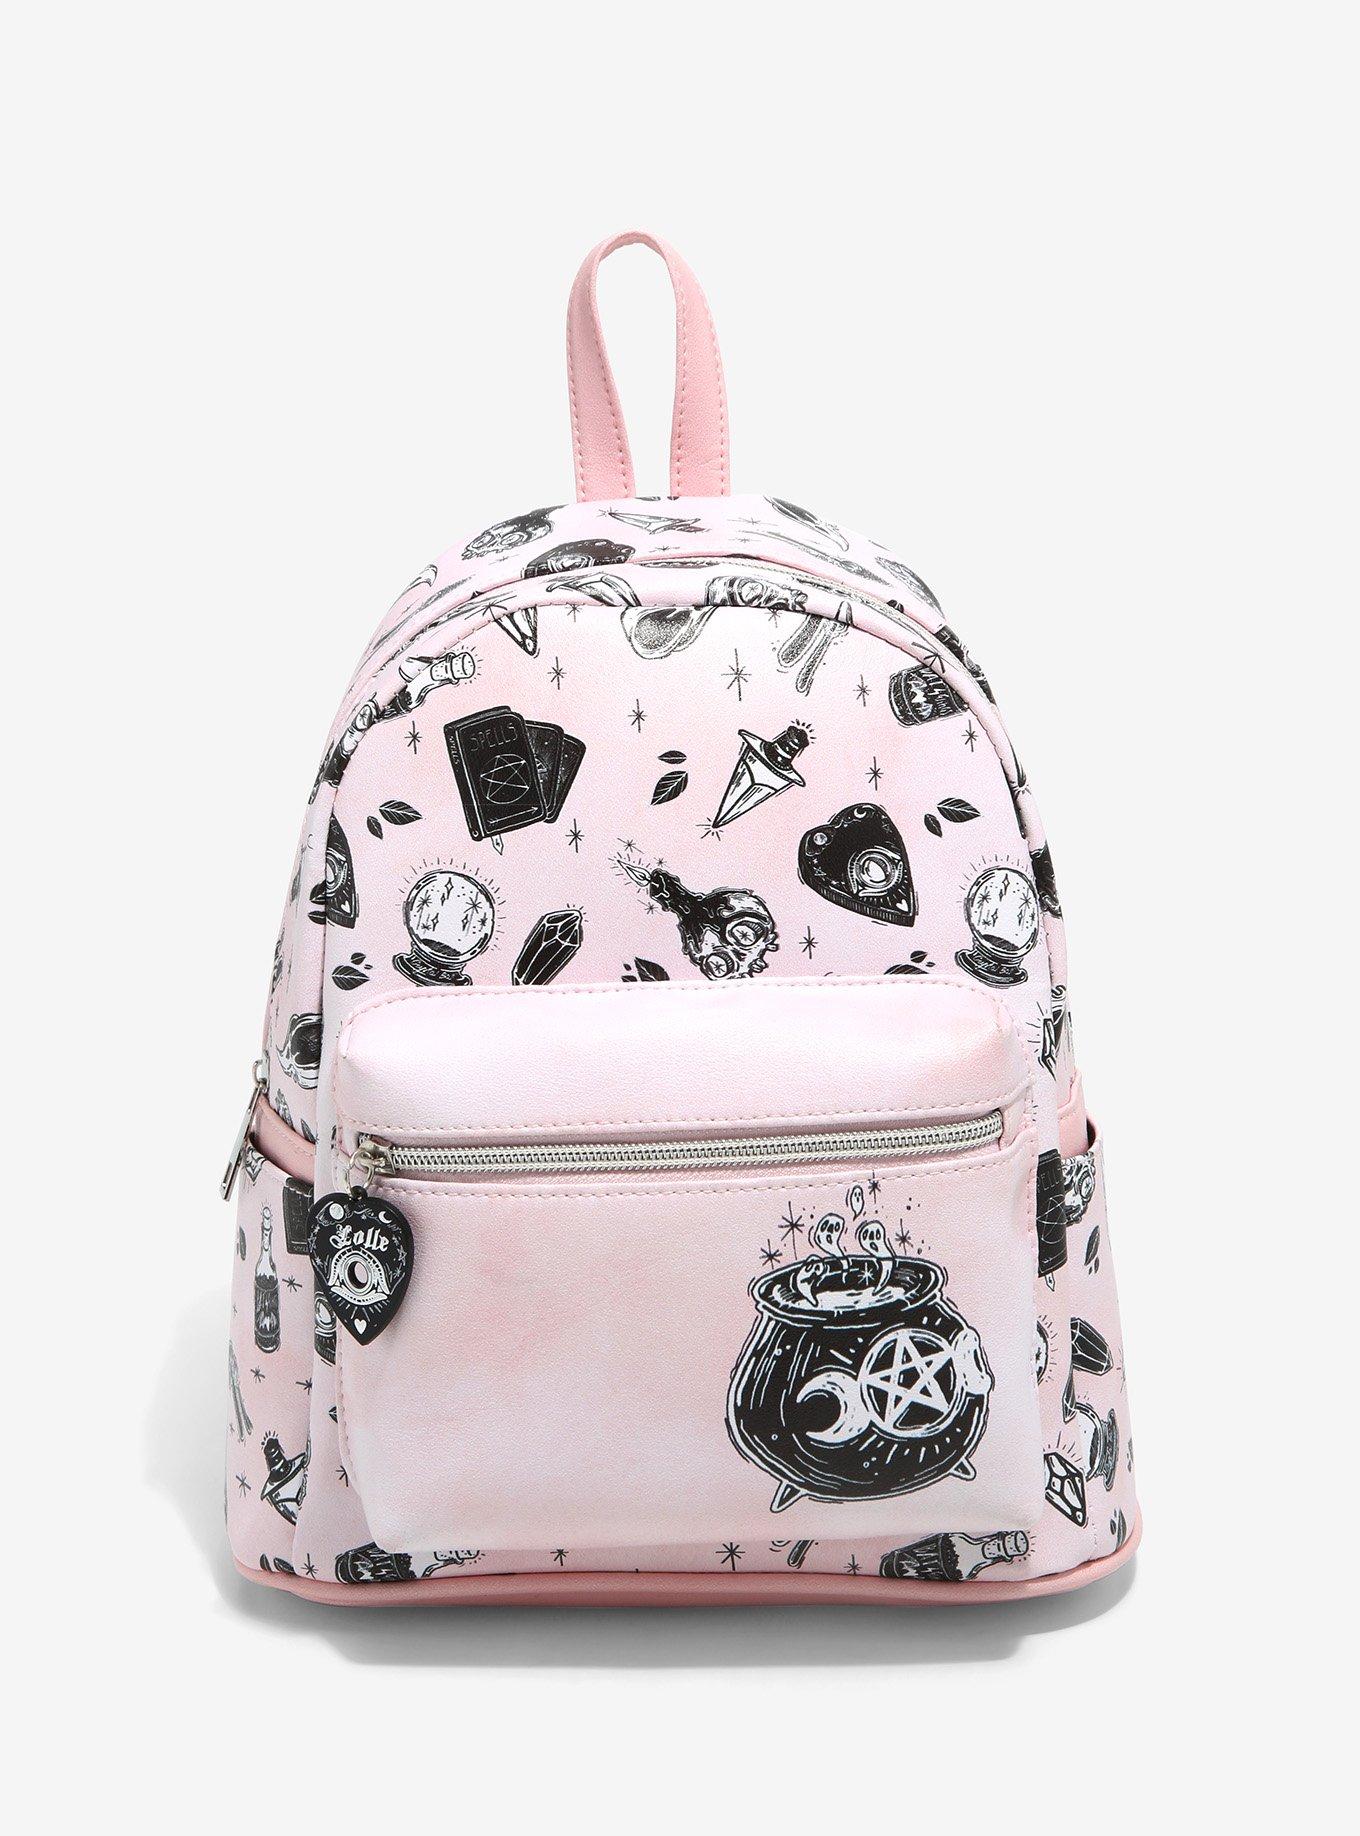 Hey Yoo Girls Backpack School Bag Cute Bookbag Gothic Backpack for Teen  Girls Women (Pink)